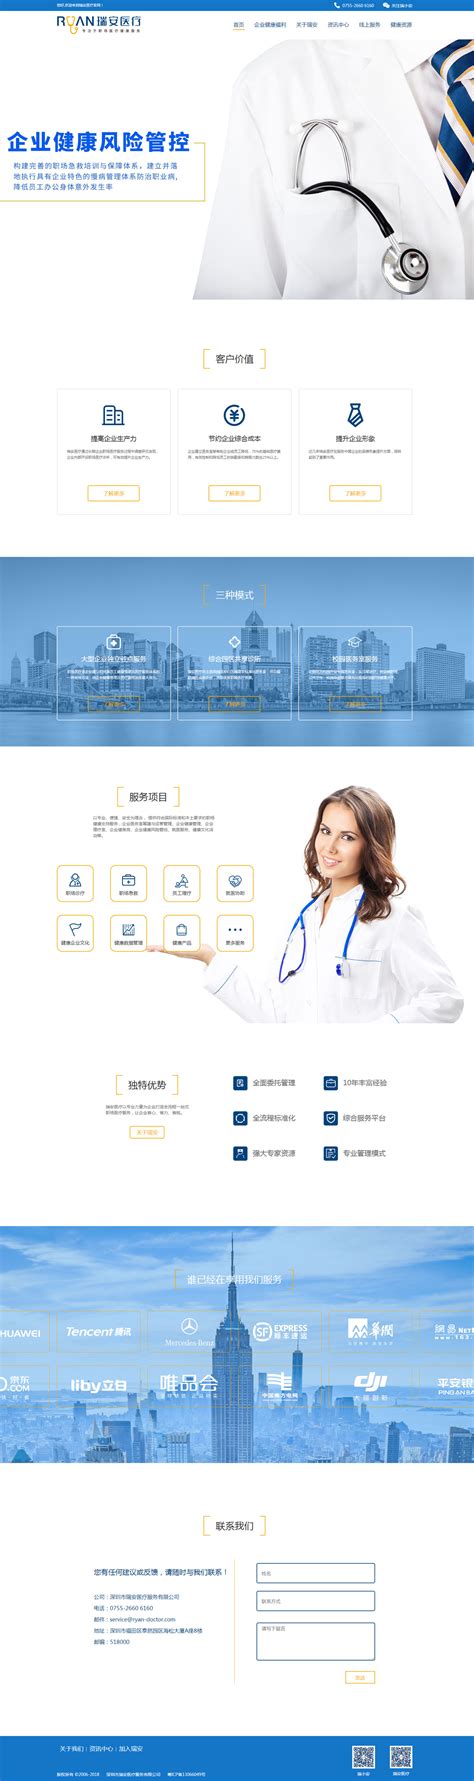 瑞安医疗网站设计案例 - 方维网络